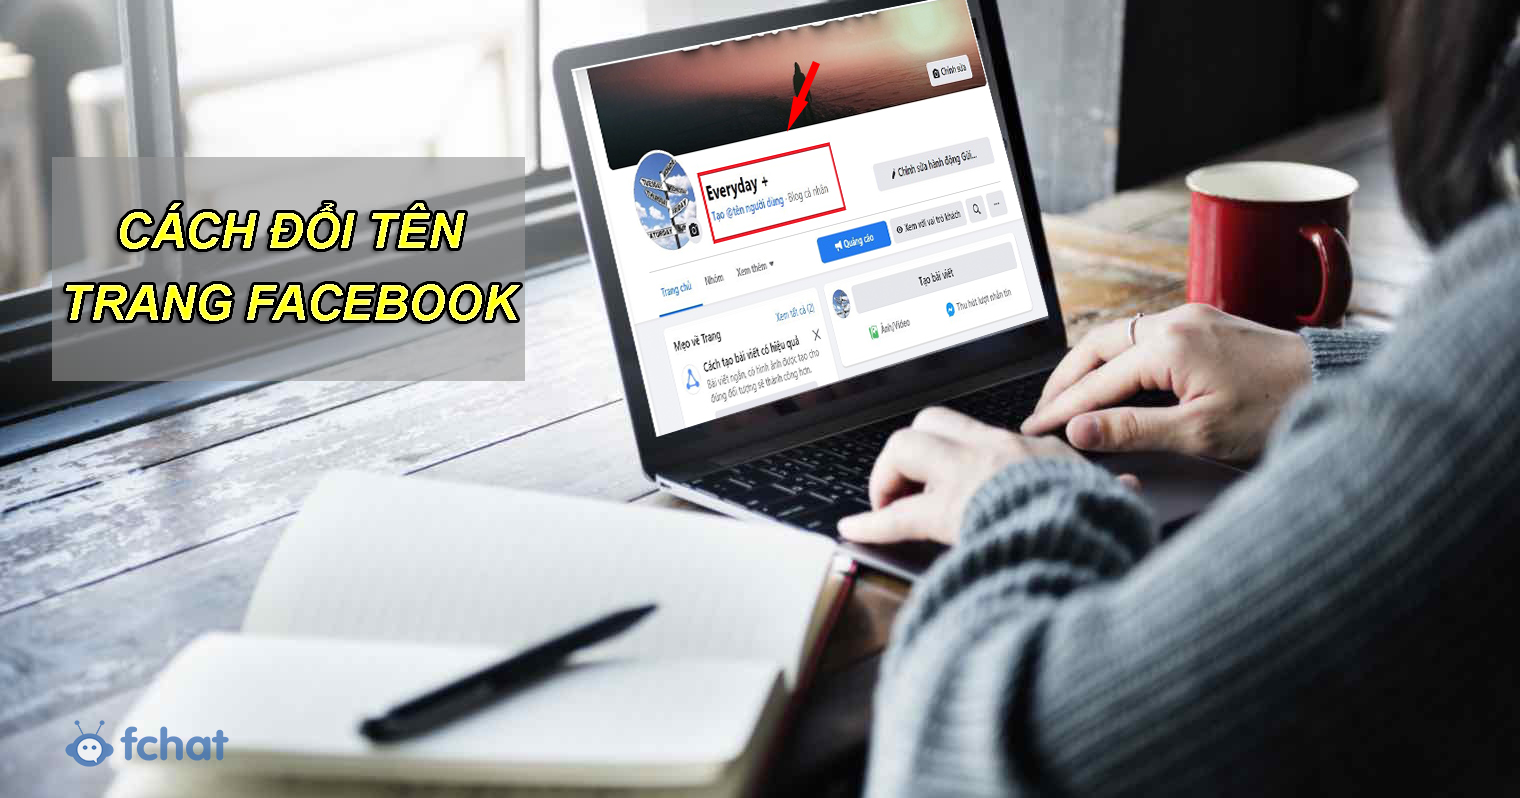 Hướng dẫn cách đổi tên trang Facebook đơn giản chỉ với vài thao tác